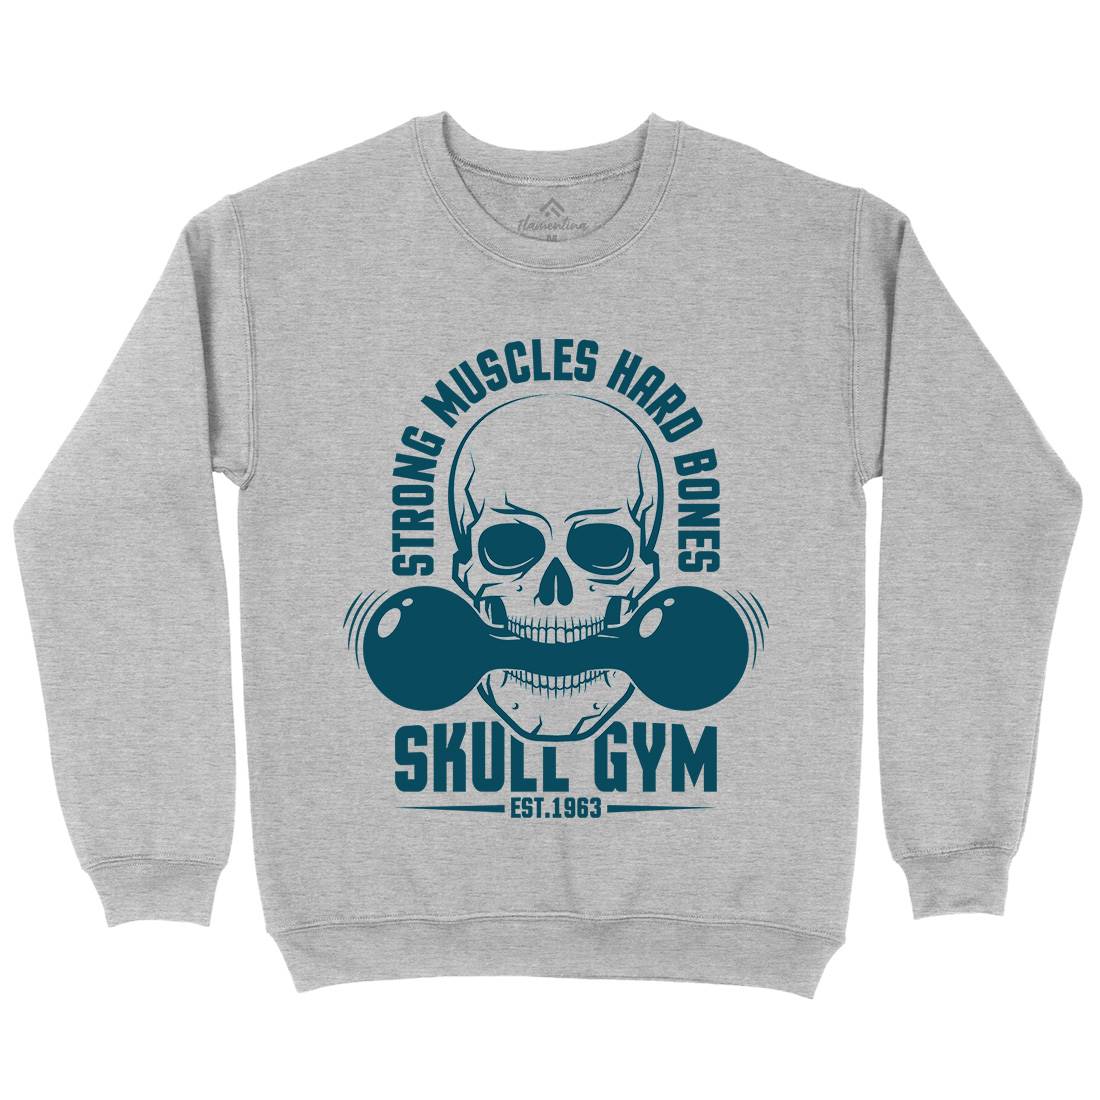 Skull Gym Kids Crew Neck Sweatshirt Gym D899